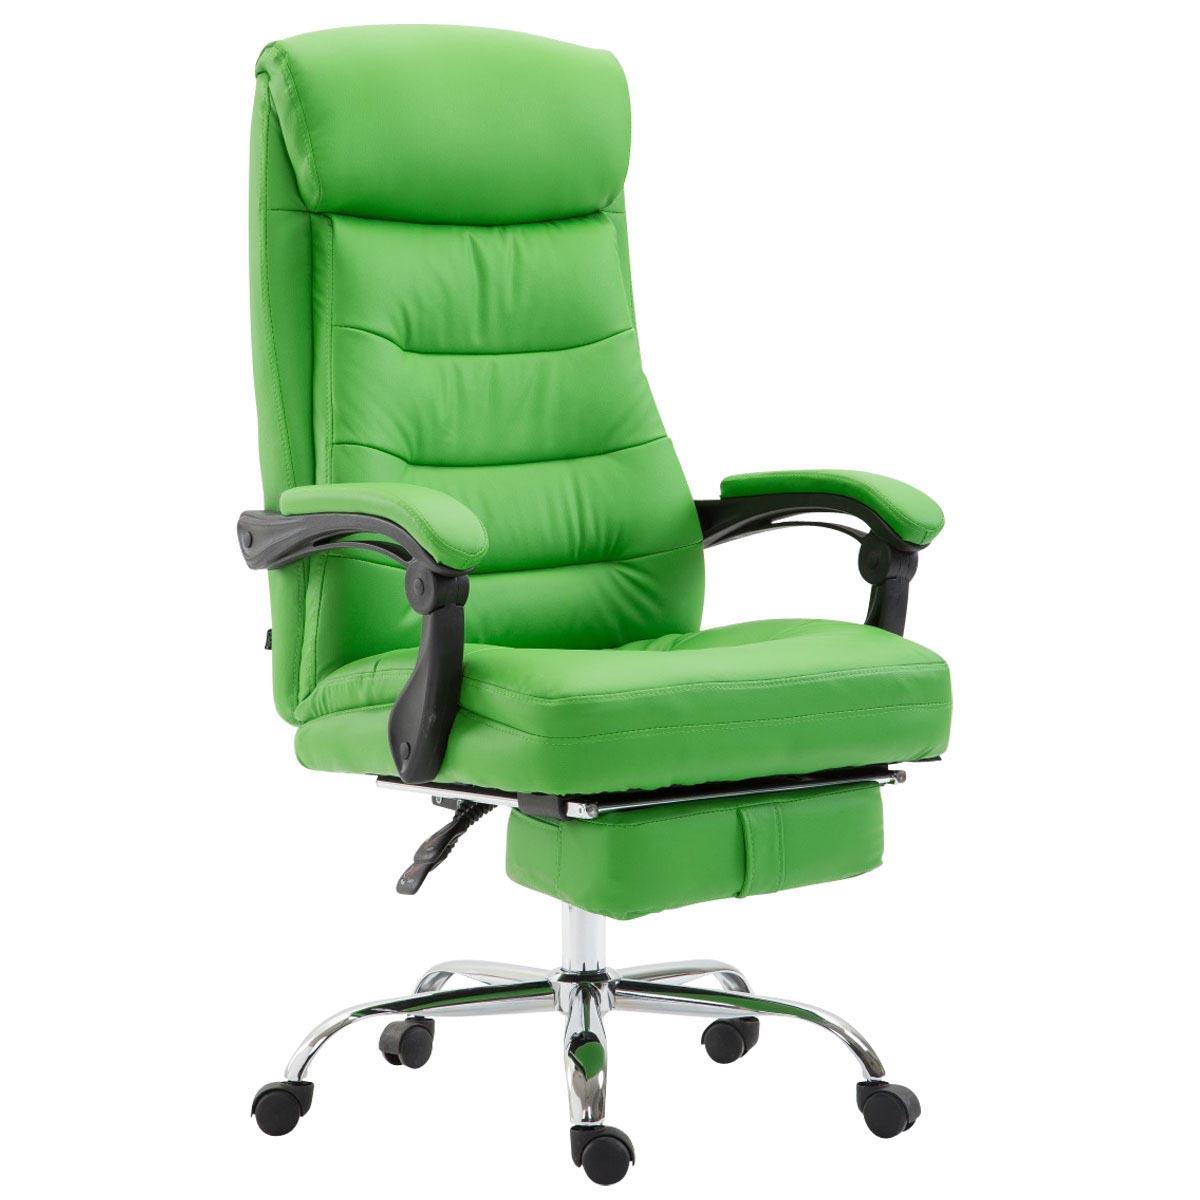 Cadeira de Escritório ARGO, Pele sintética, Com Apoio Para os Pés, Cor Verde